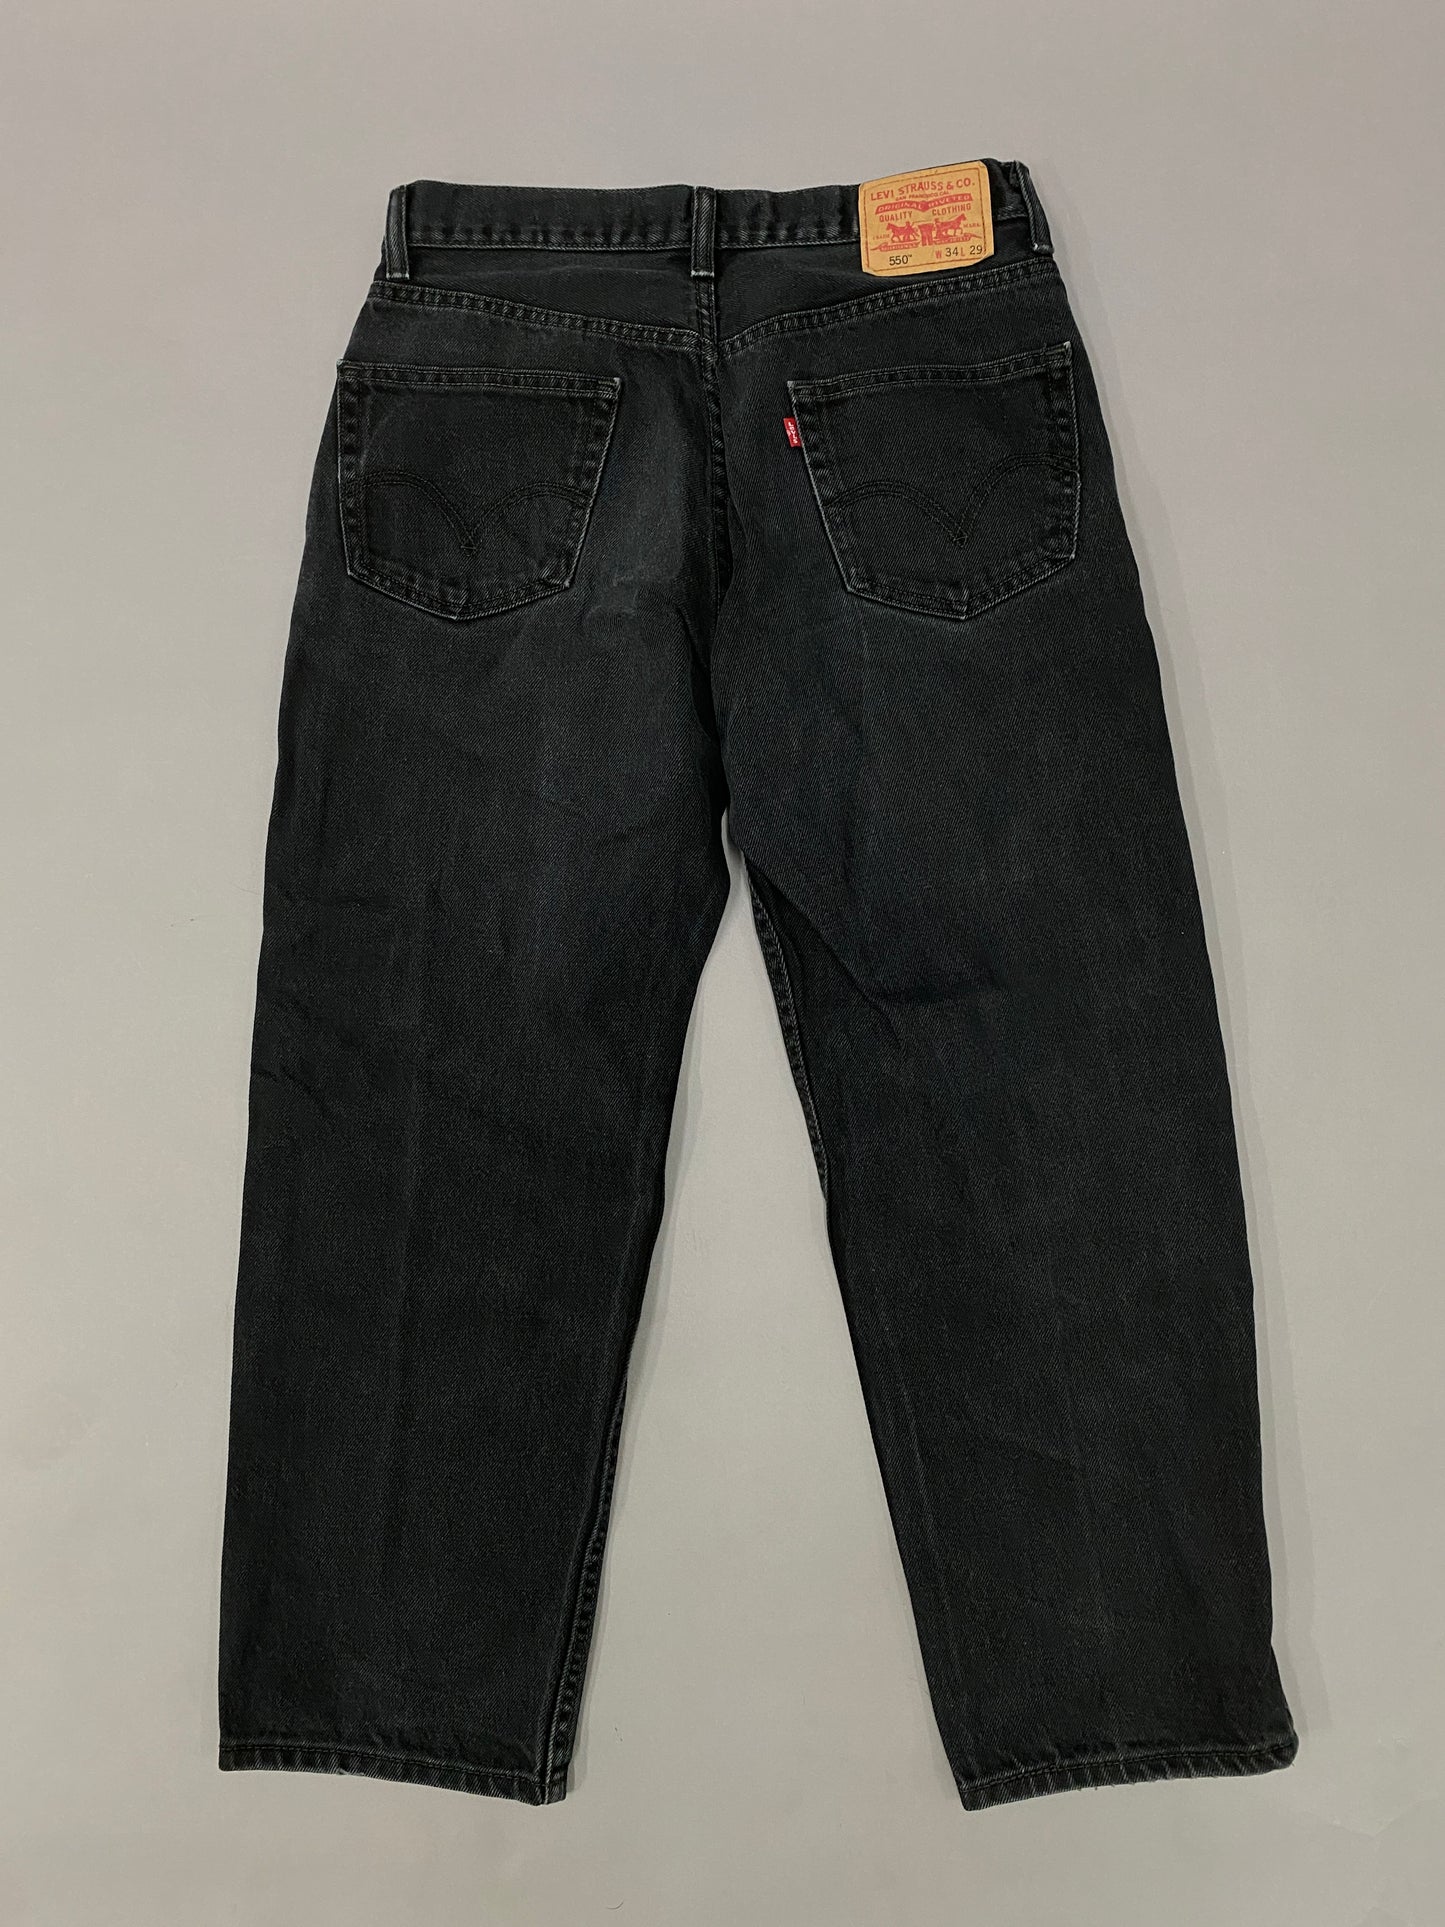 Jeans Levis 550 - 34 x 29